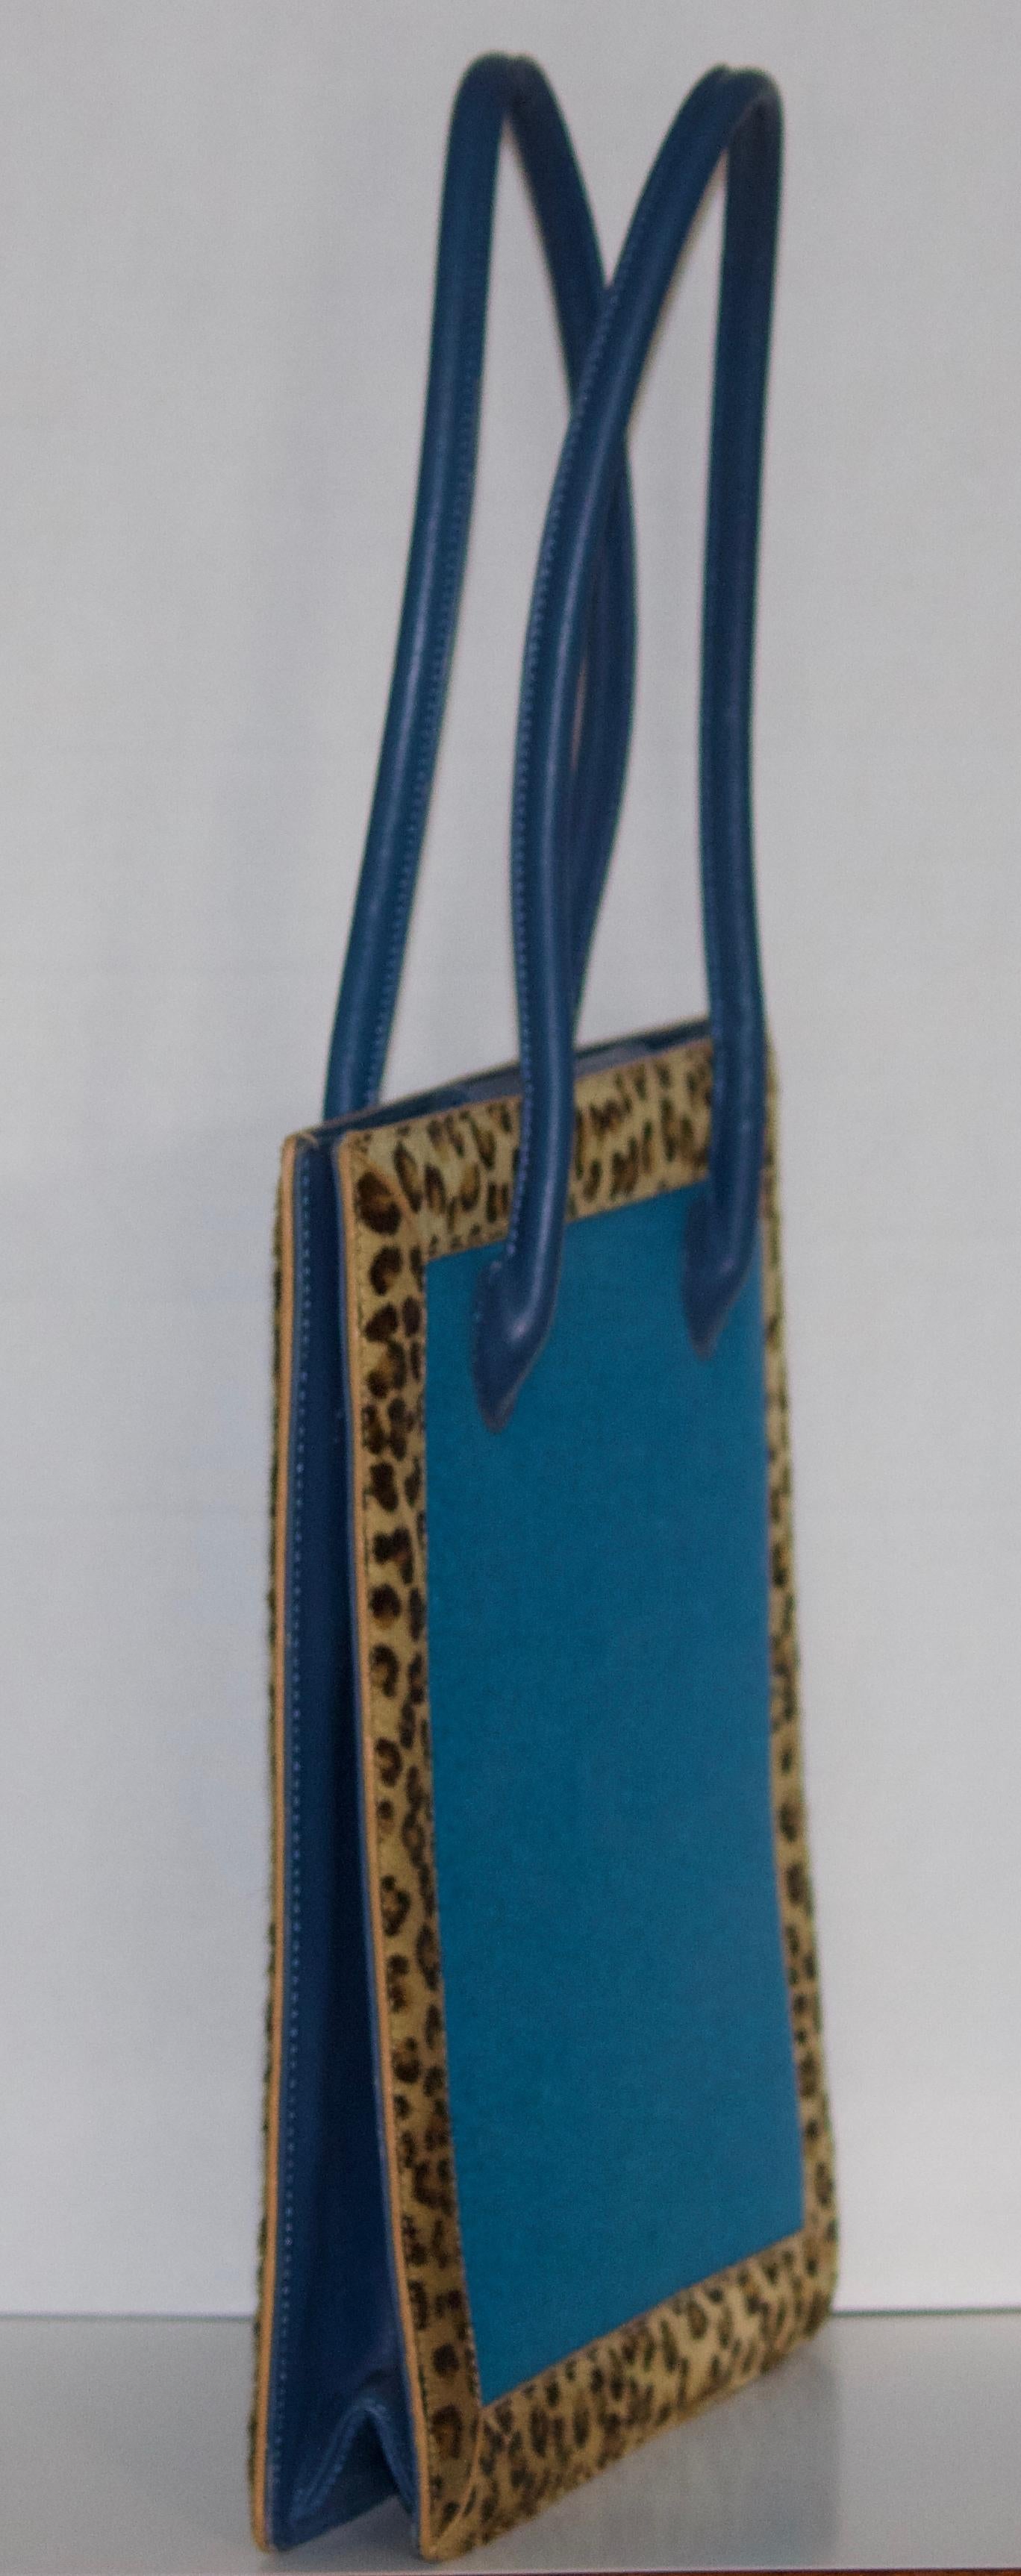 Artful Vintage Nicole Miller Novelty Leather Handbag-Leopard Calf Hair Fur Trim For Sale 2